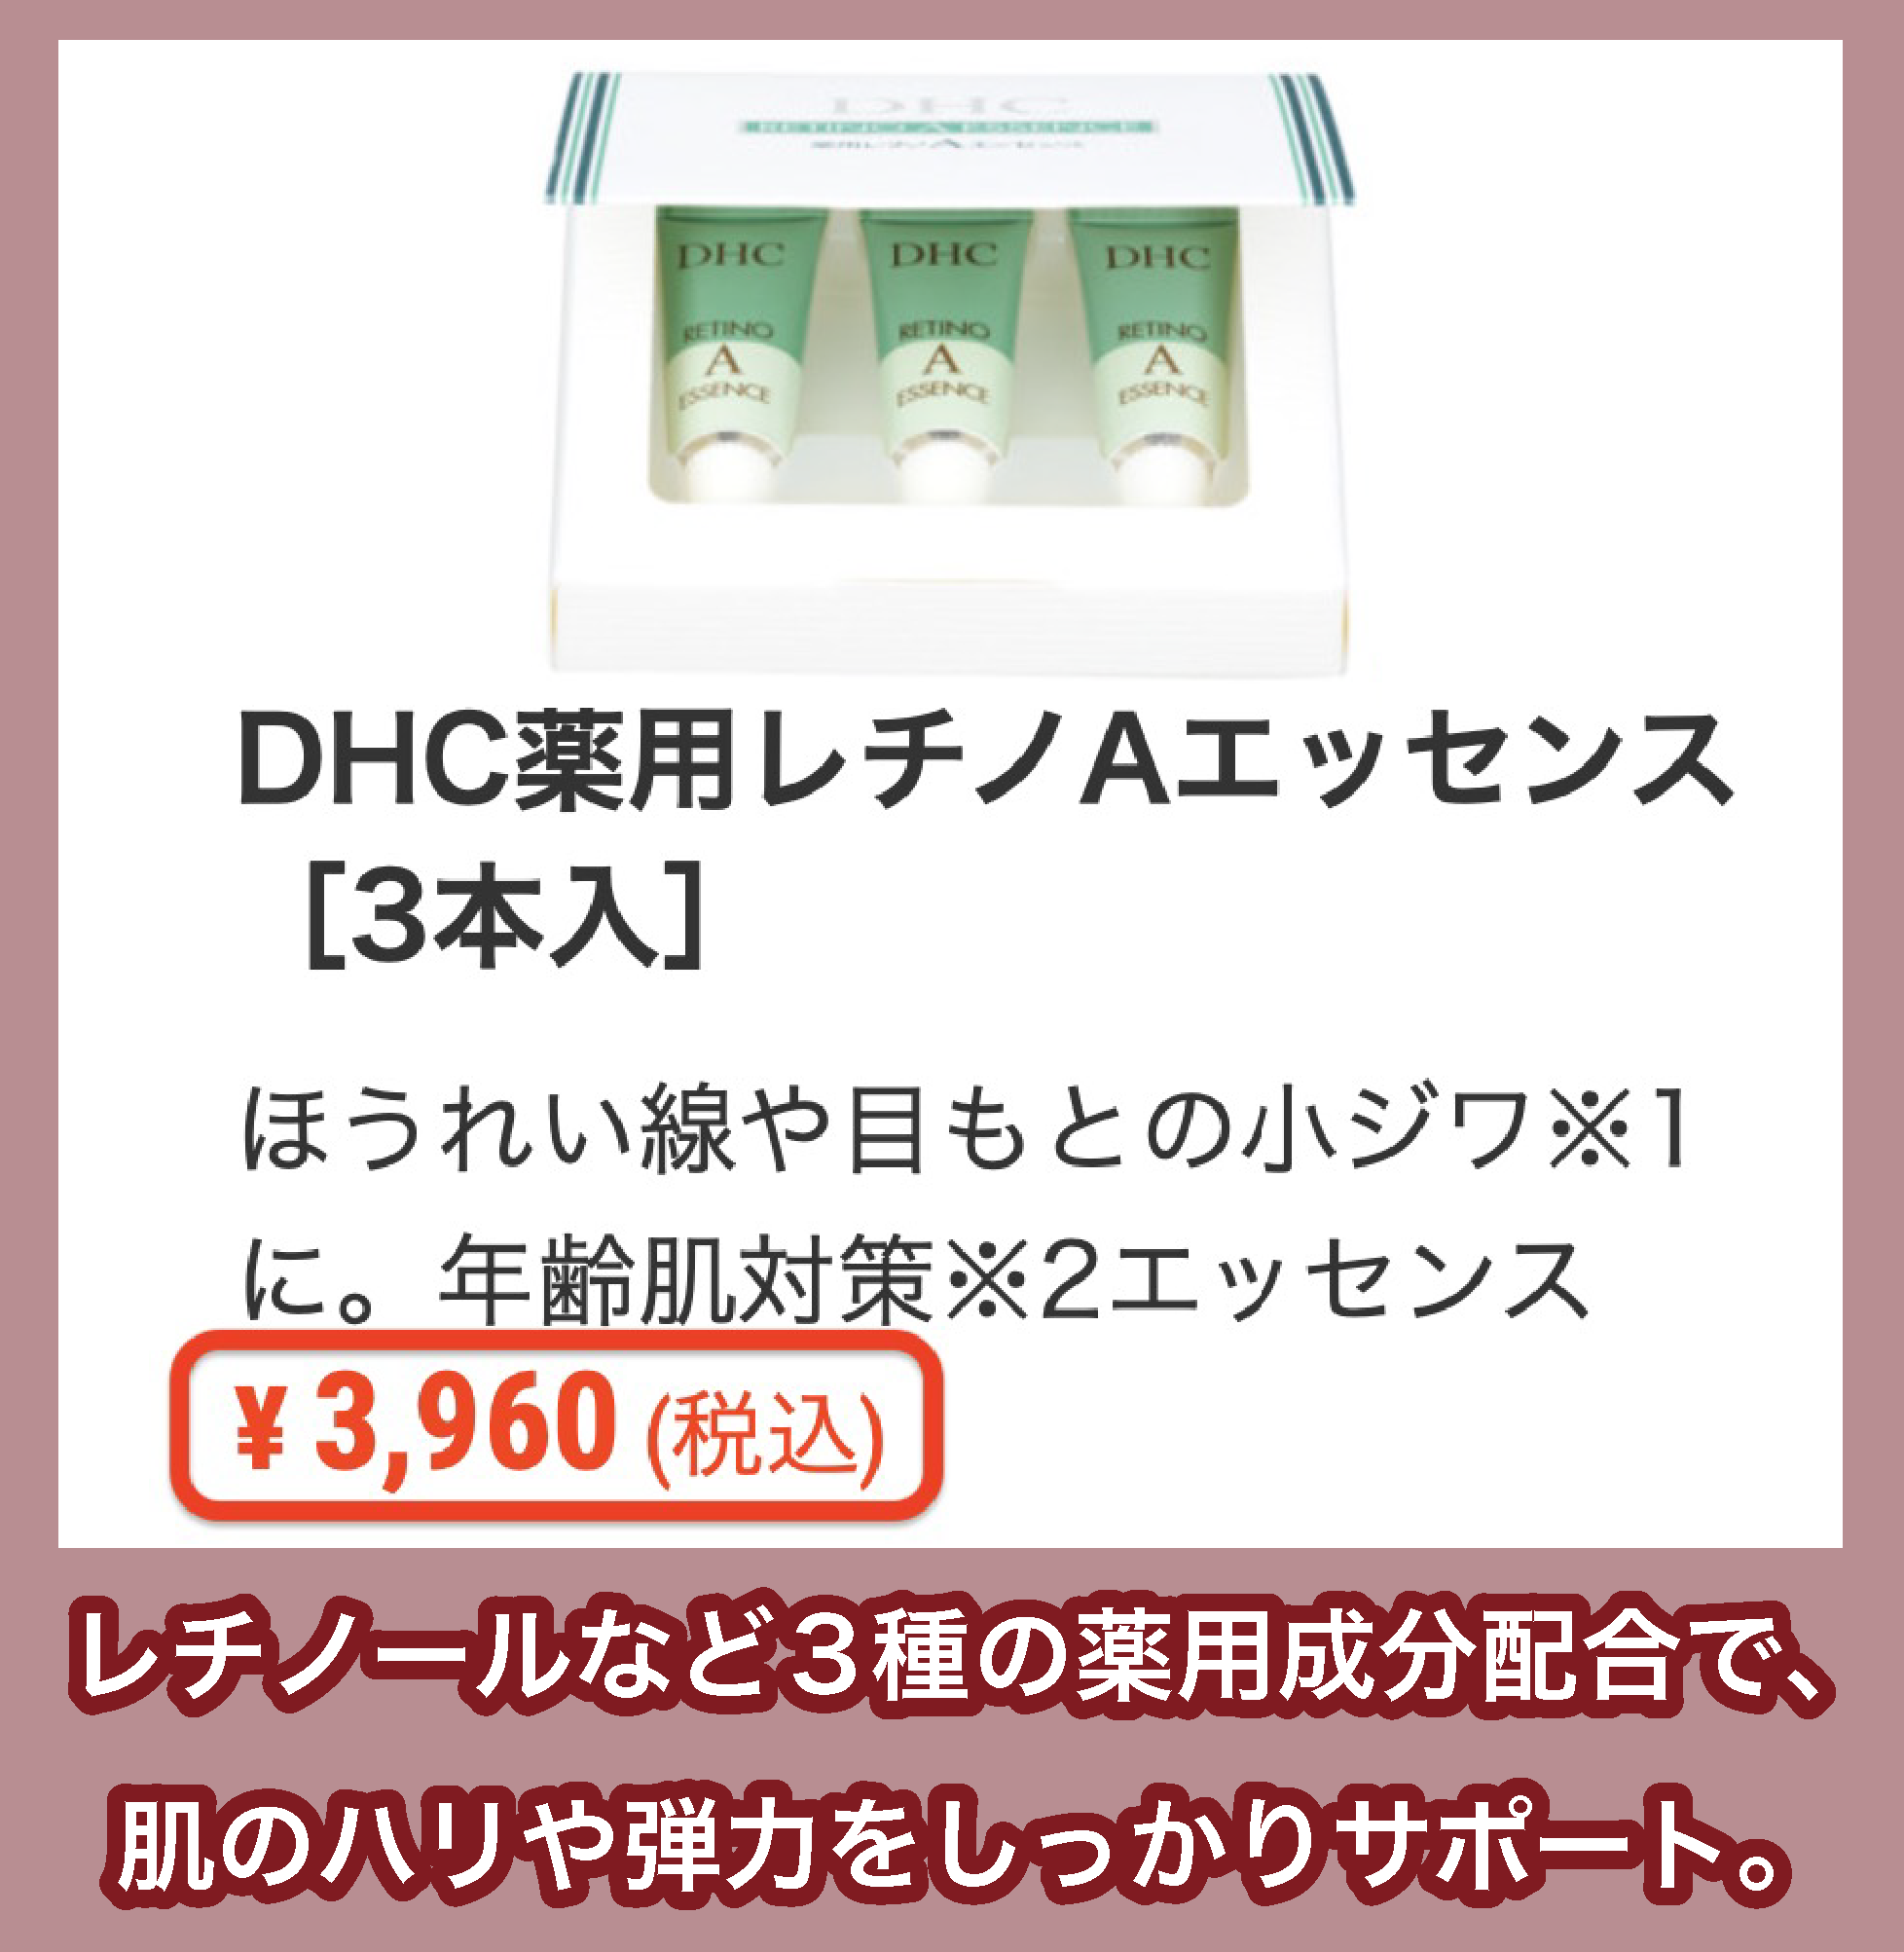 DHC「DHC薬用レチノAエッセンス[3本入]」の価格